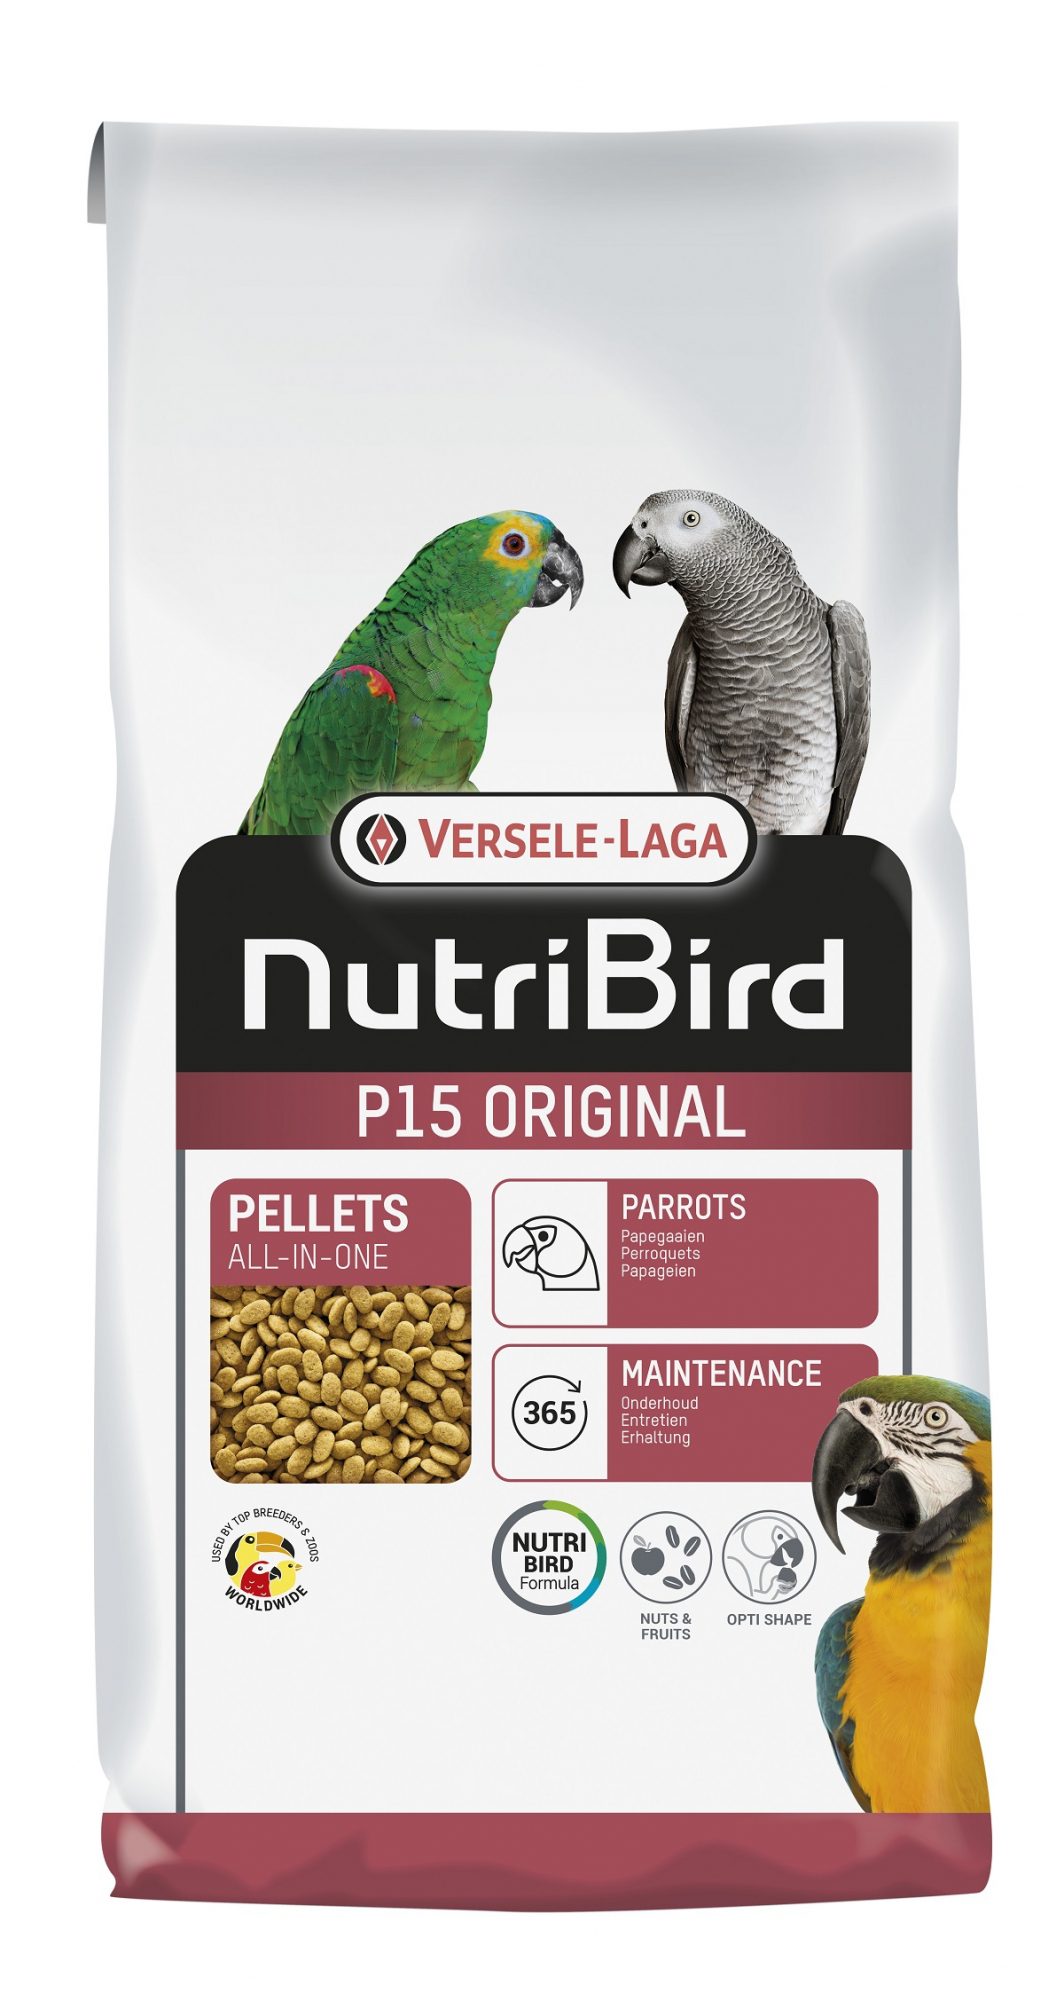 NutriBird P 15 Original - Futter für Papageien